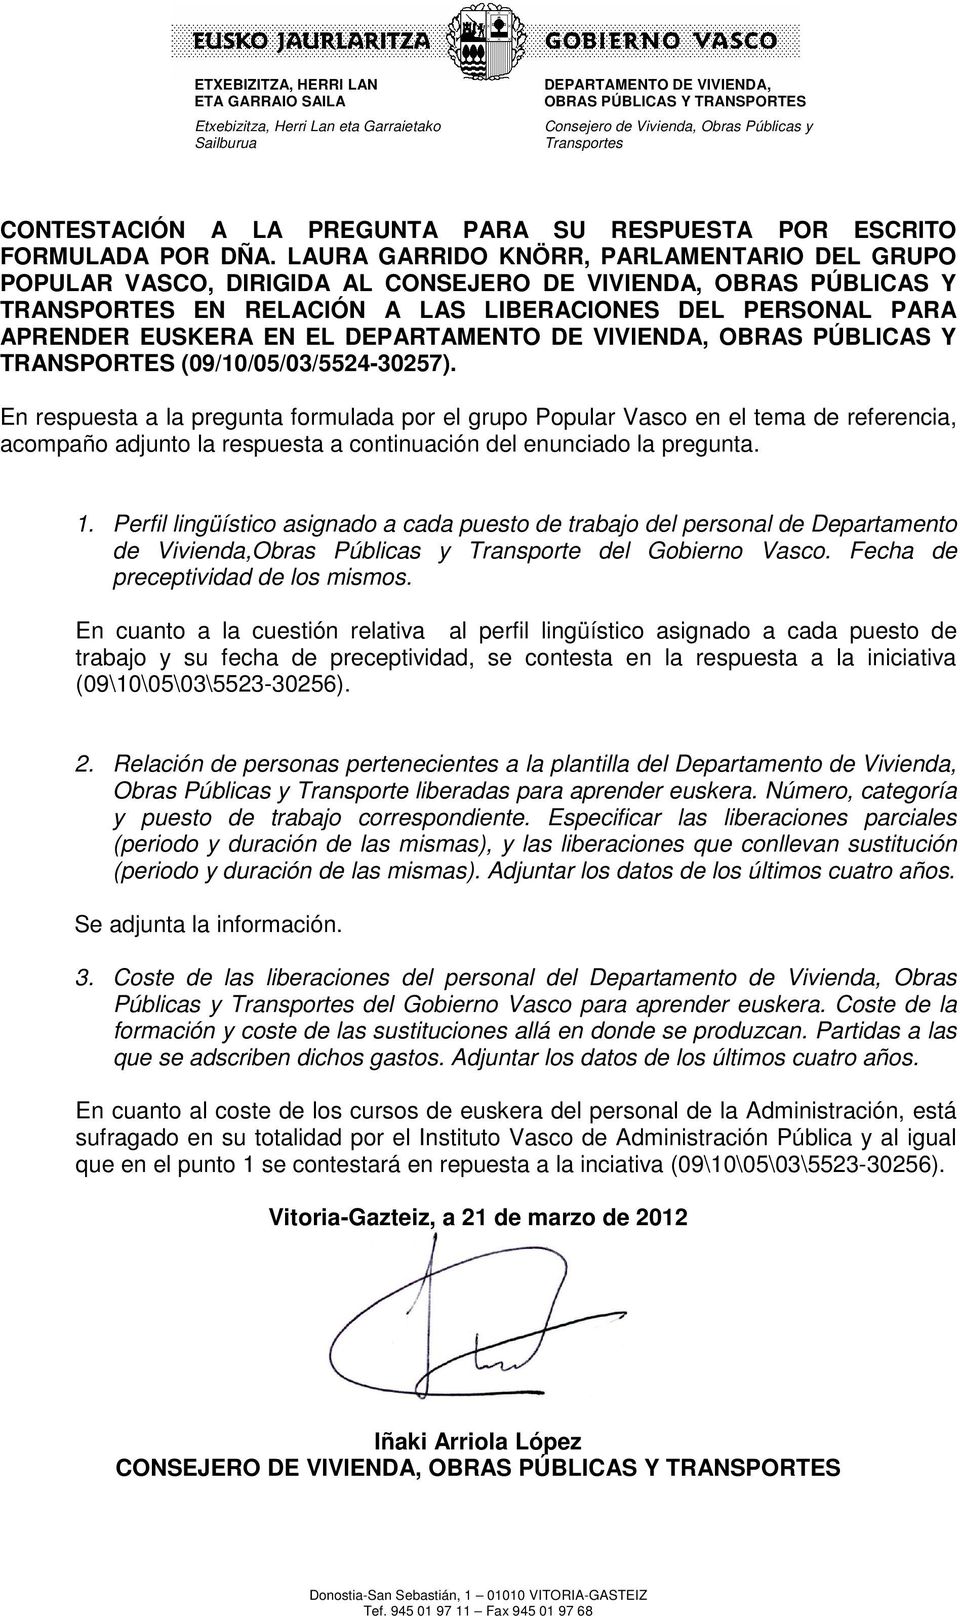 OBRAS PÚBLICAS Y TRANSPORTES (09/10/05/03/5524-30257).